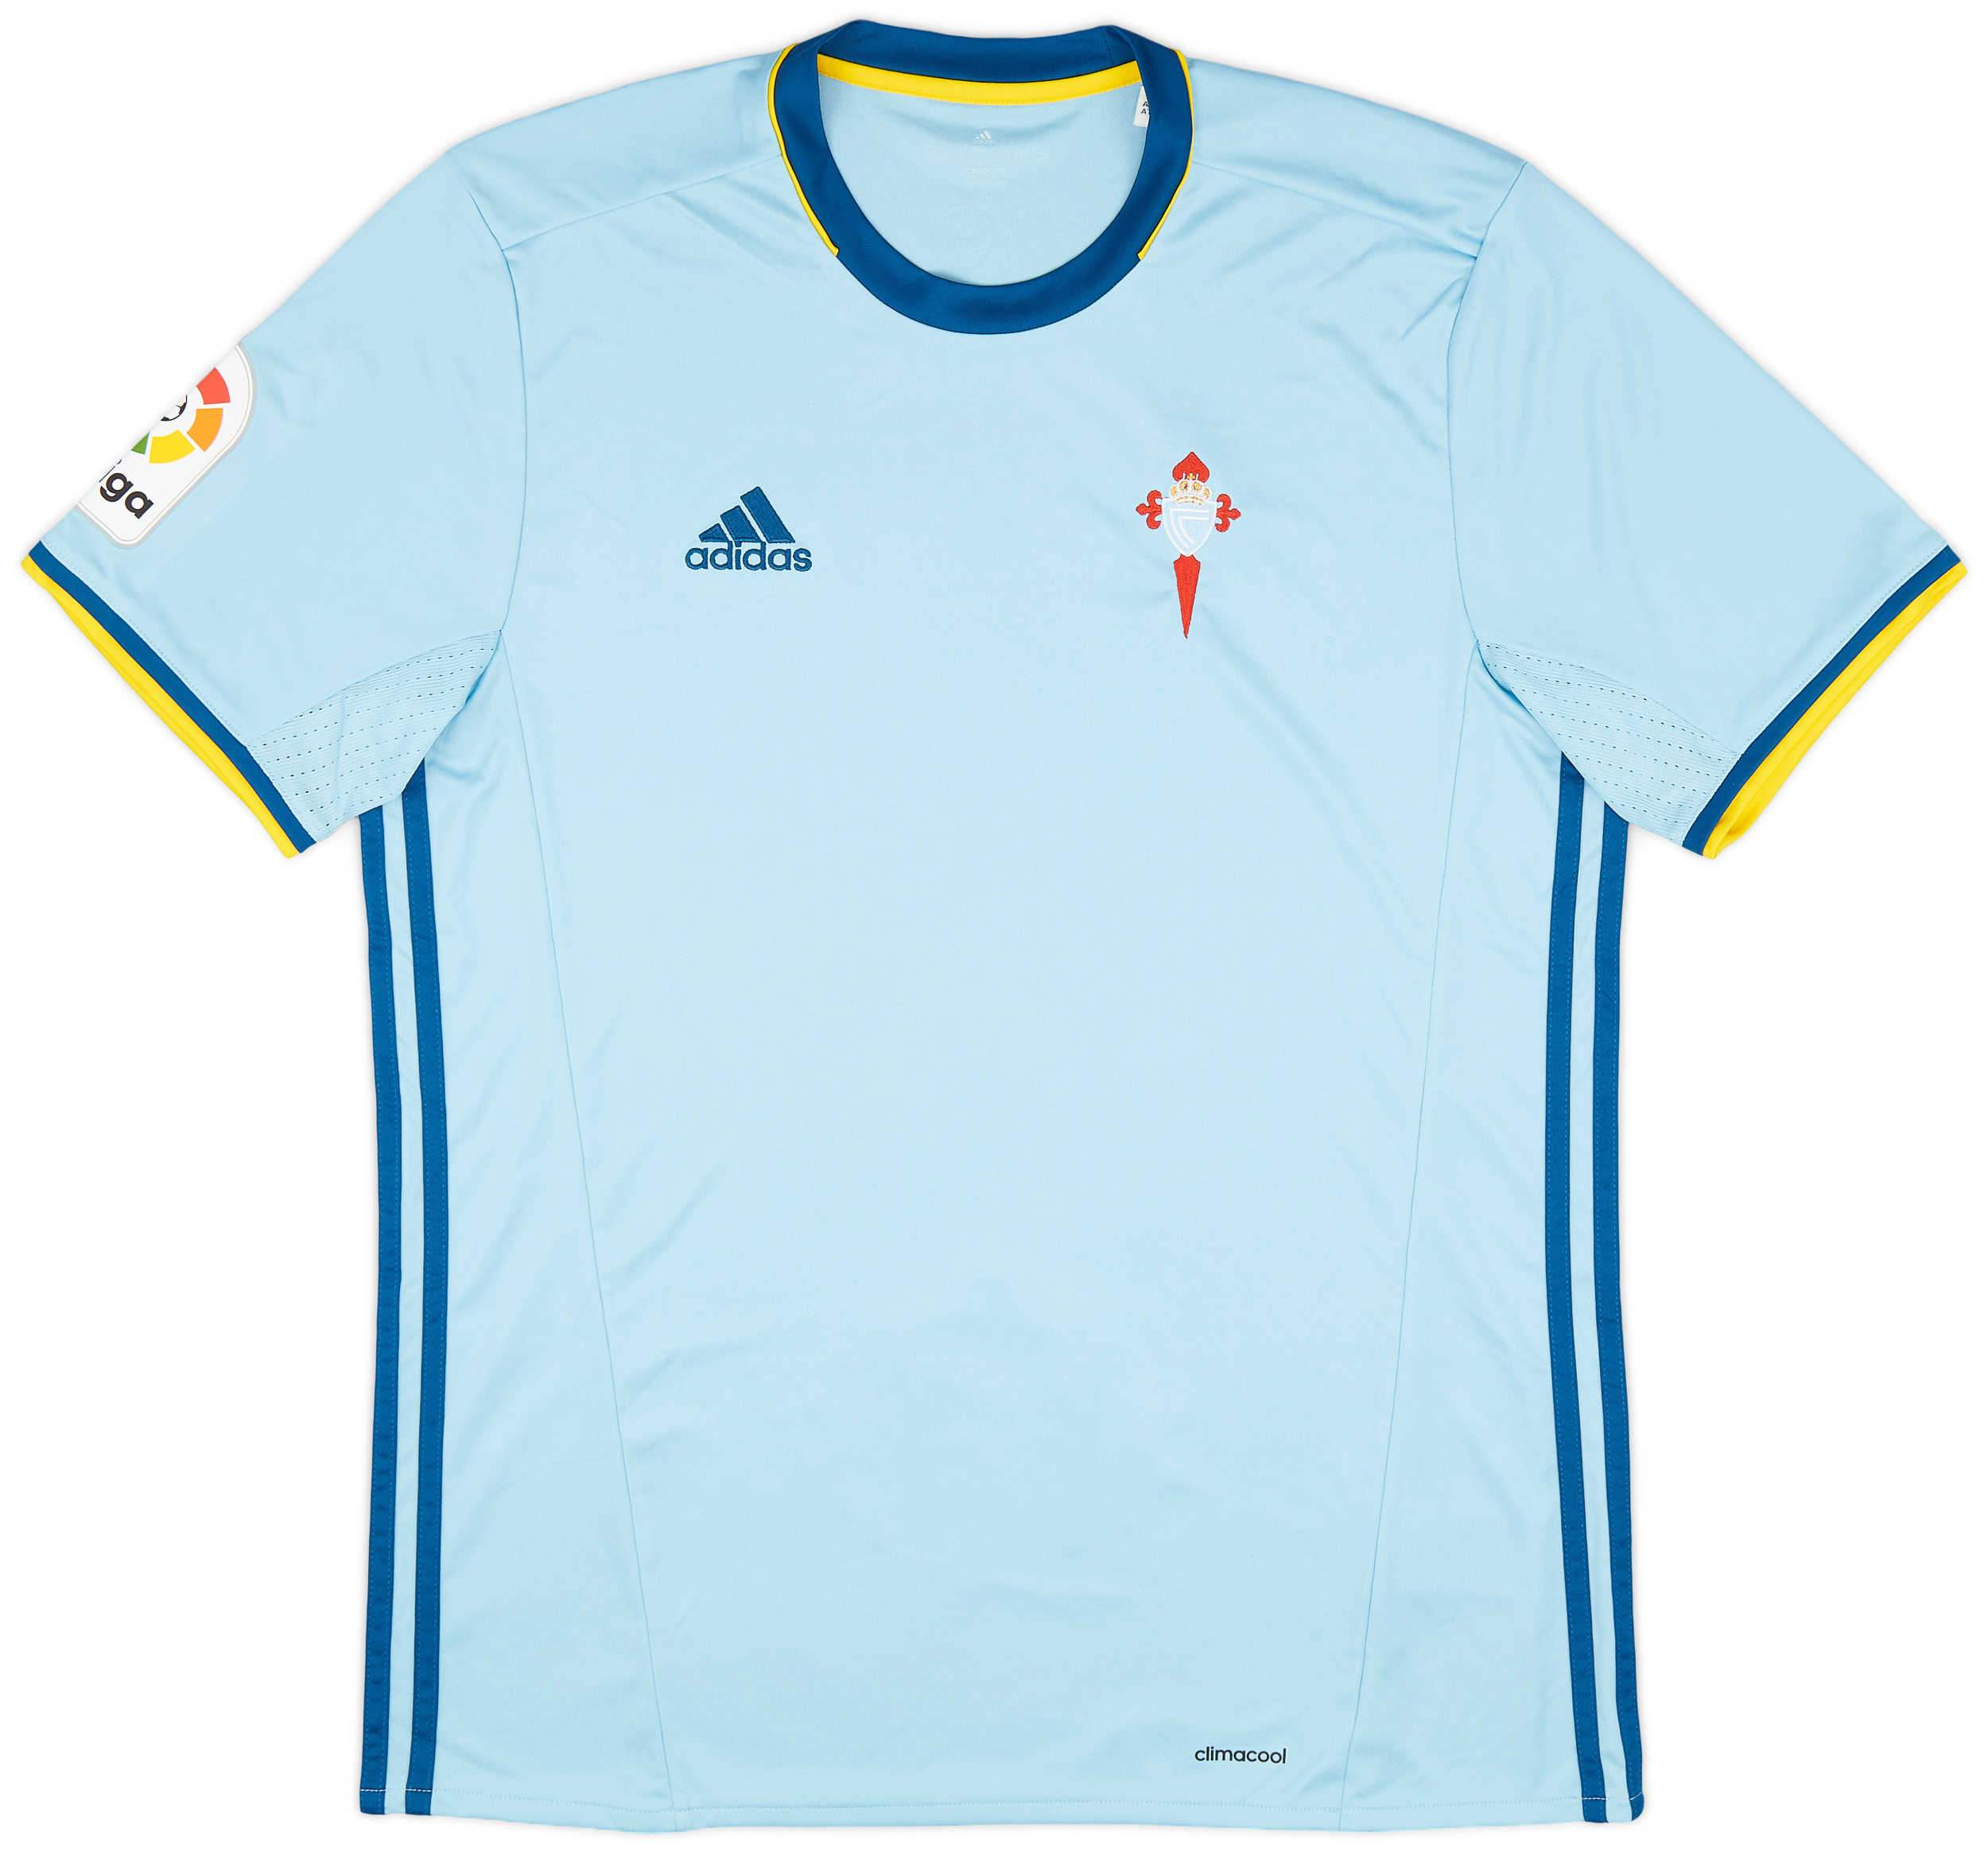 Celta Vigo  home shirt  (Original)